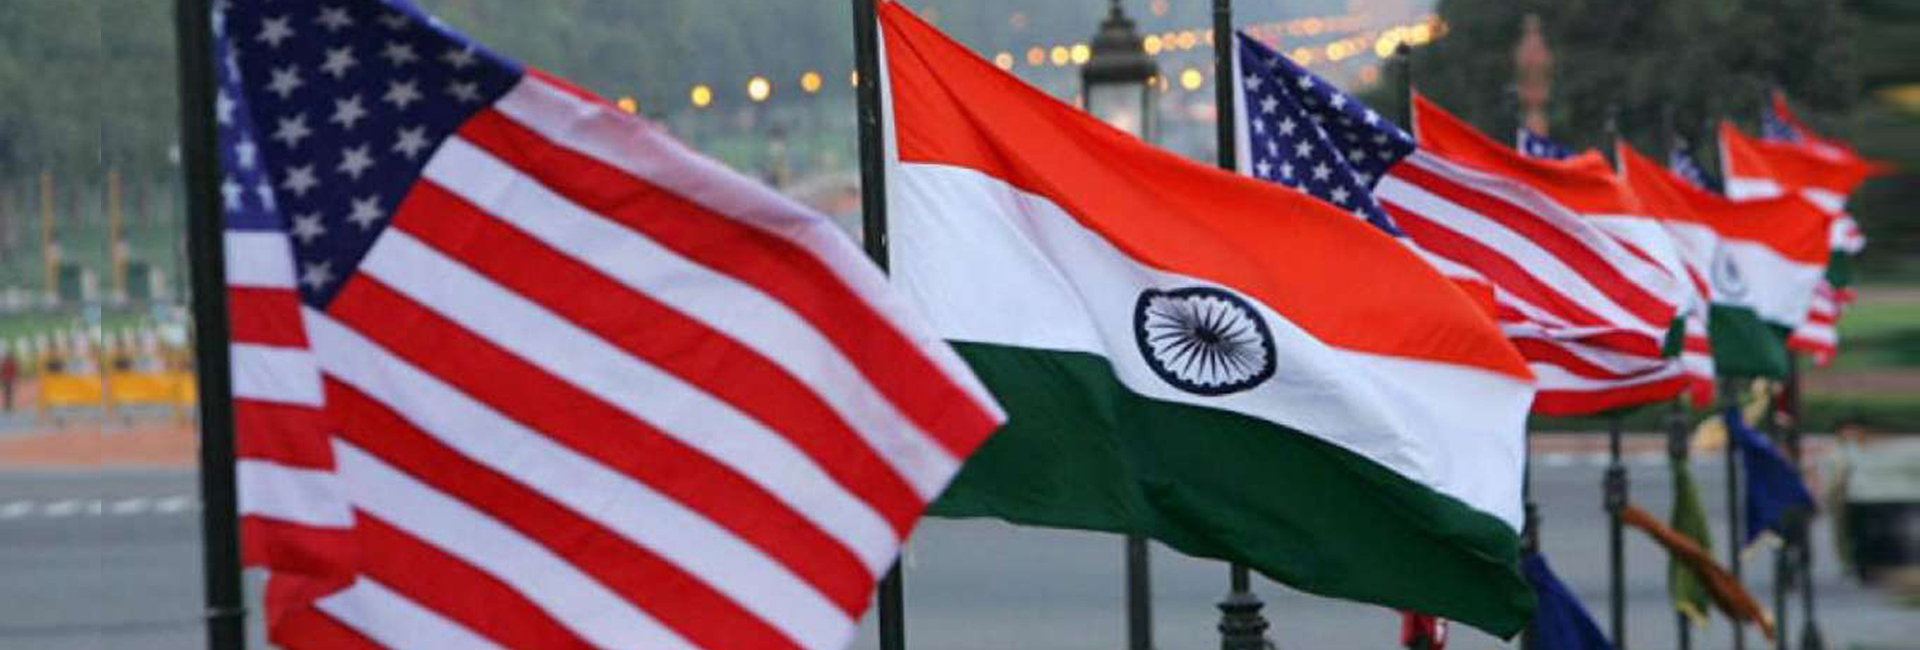 Incontra i politici indiani americani in corsa per le elezioni di medio termine del 2022 negli Stati Uniti